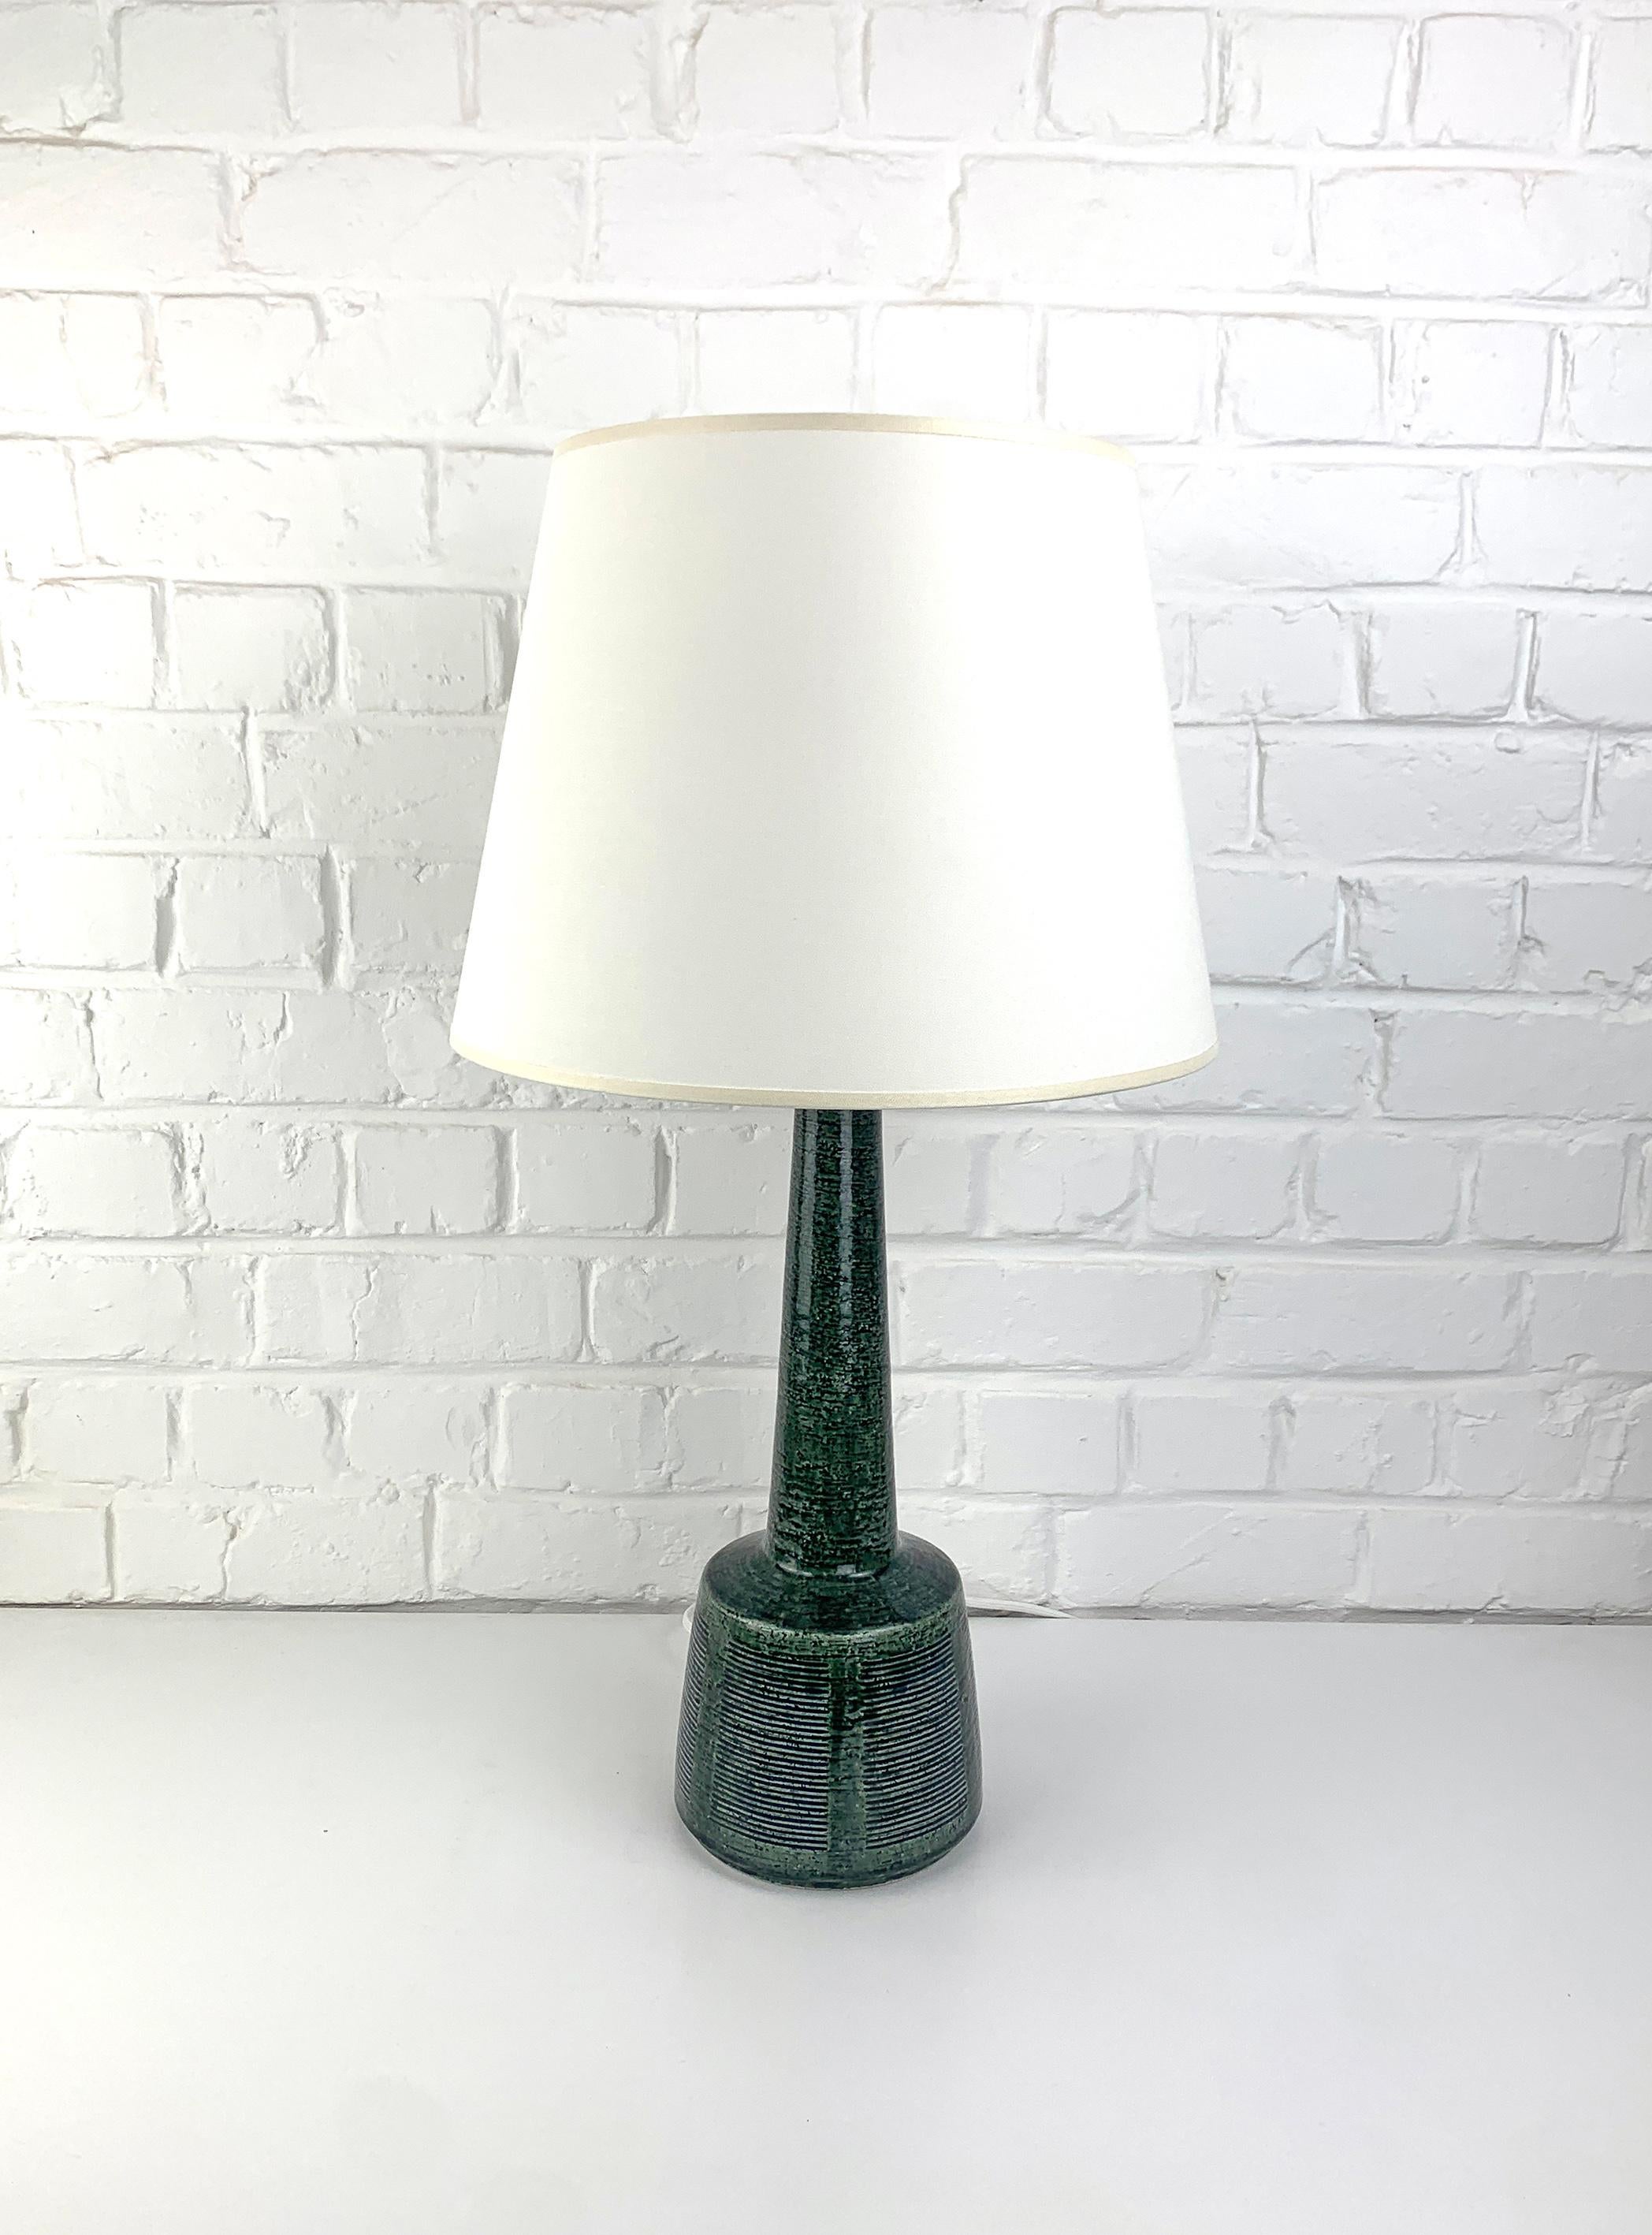 Cette lampe a été conçue par Esben Klint, le fils de Kaare Klint (le célèbre designer danois de meubles). Esben a créé un design intemporel avec ce modèle, il a un côté contemporain et graphique malgré ses plus de 50 ans.

Ces lampes ont été